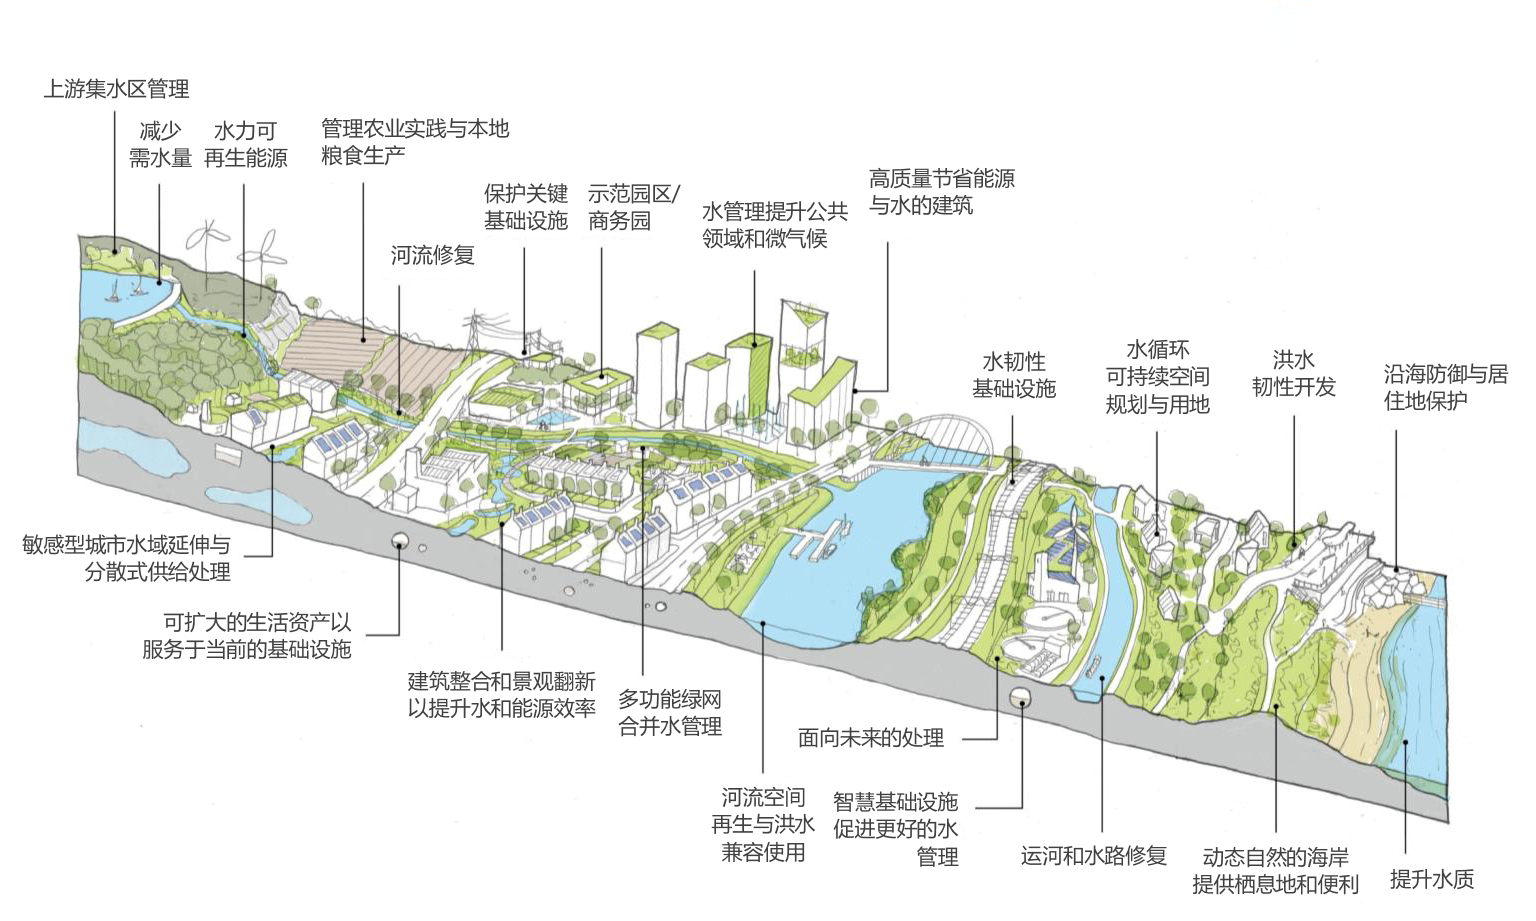 张祺：水适应性蓝绿基础设施以及在中国的应用